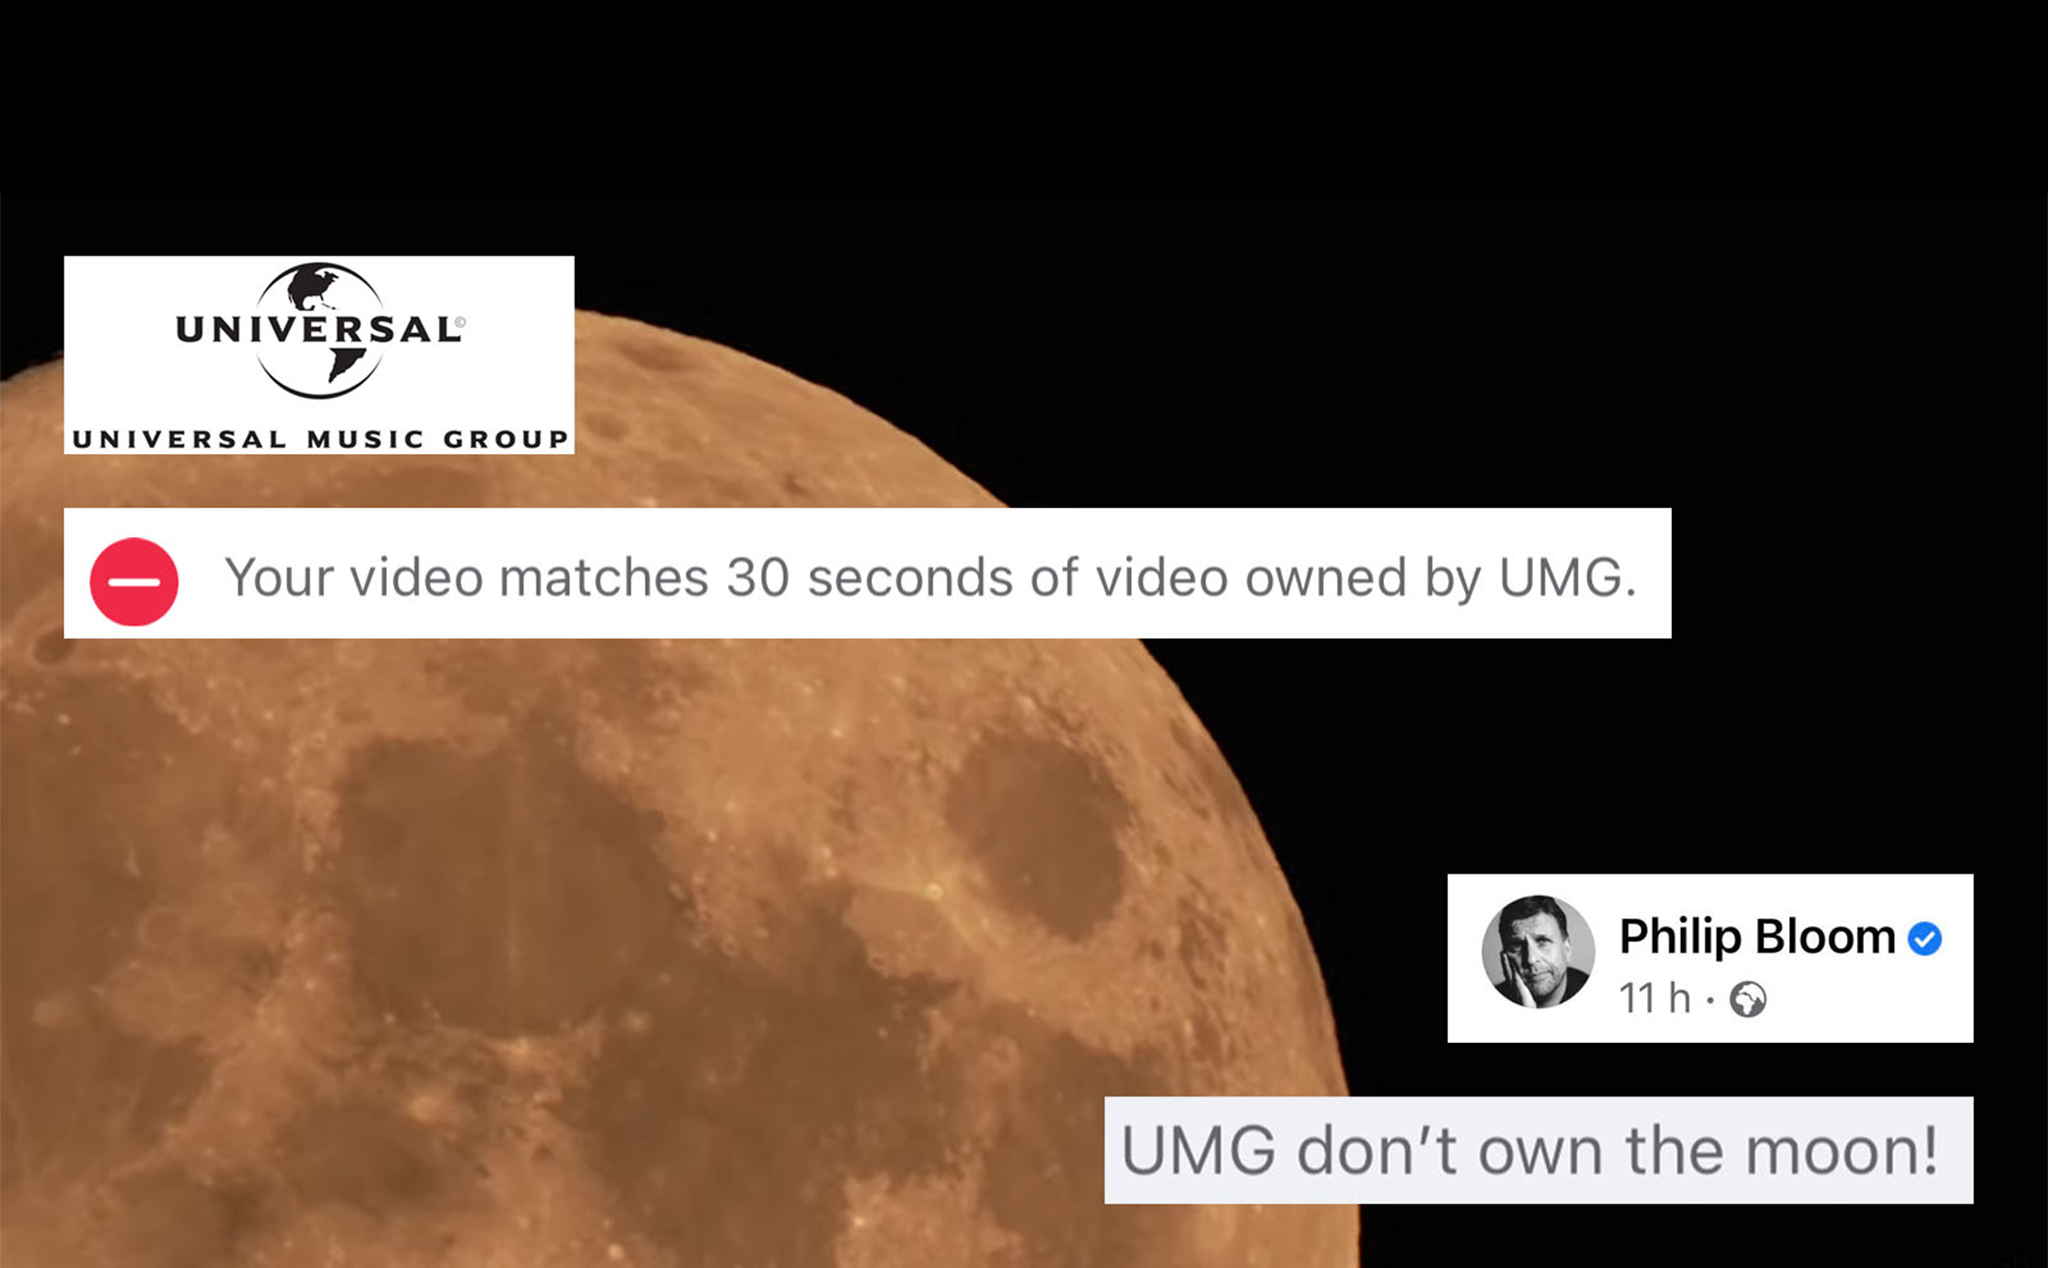 Quay video mặt trăng đăng lên FB và bị block vì vi phạm "bản quyền Mặt trăng" (?)